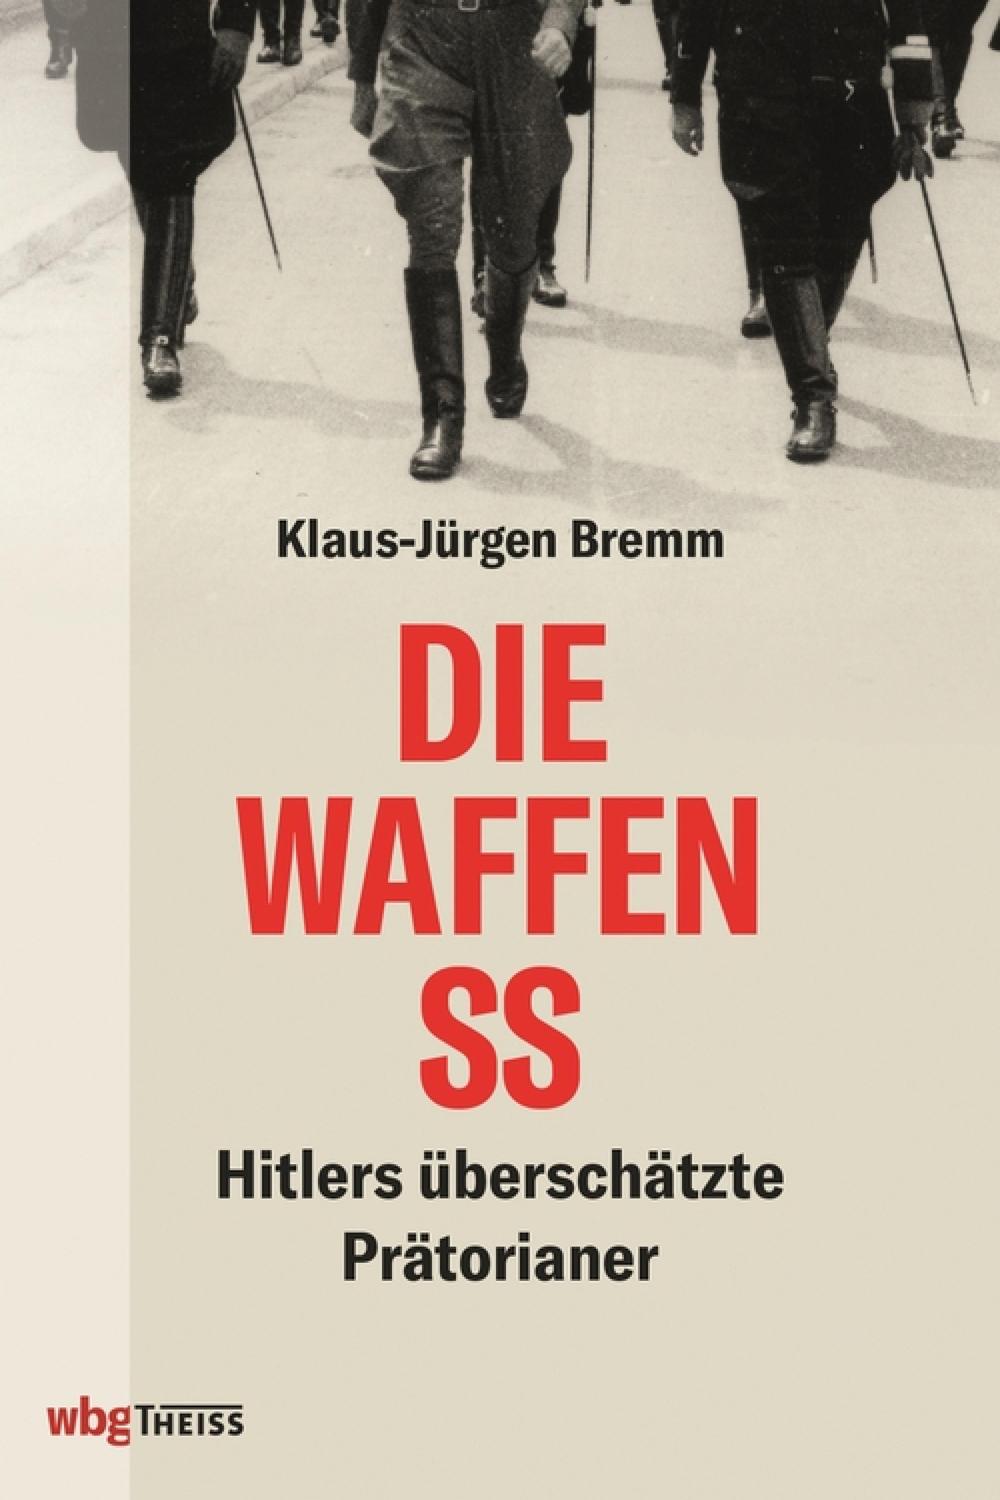 Die Waffen-SS - Klaus-Jürgen Bremm